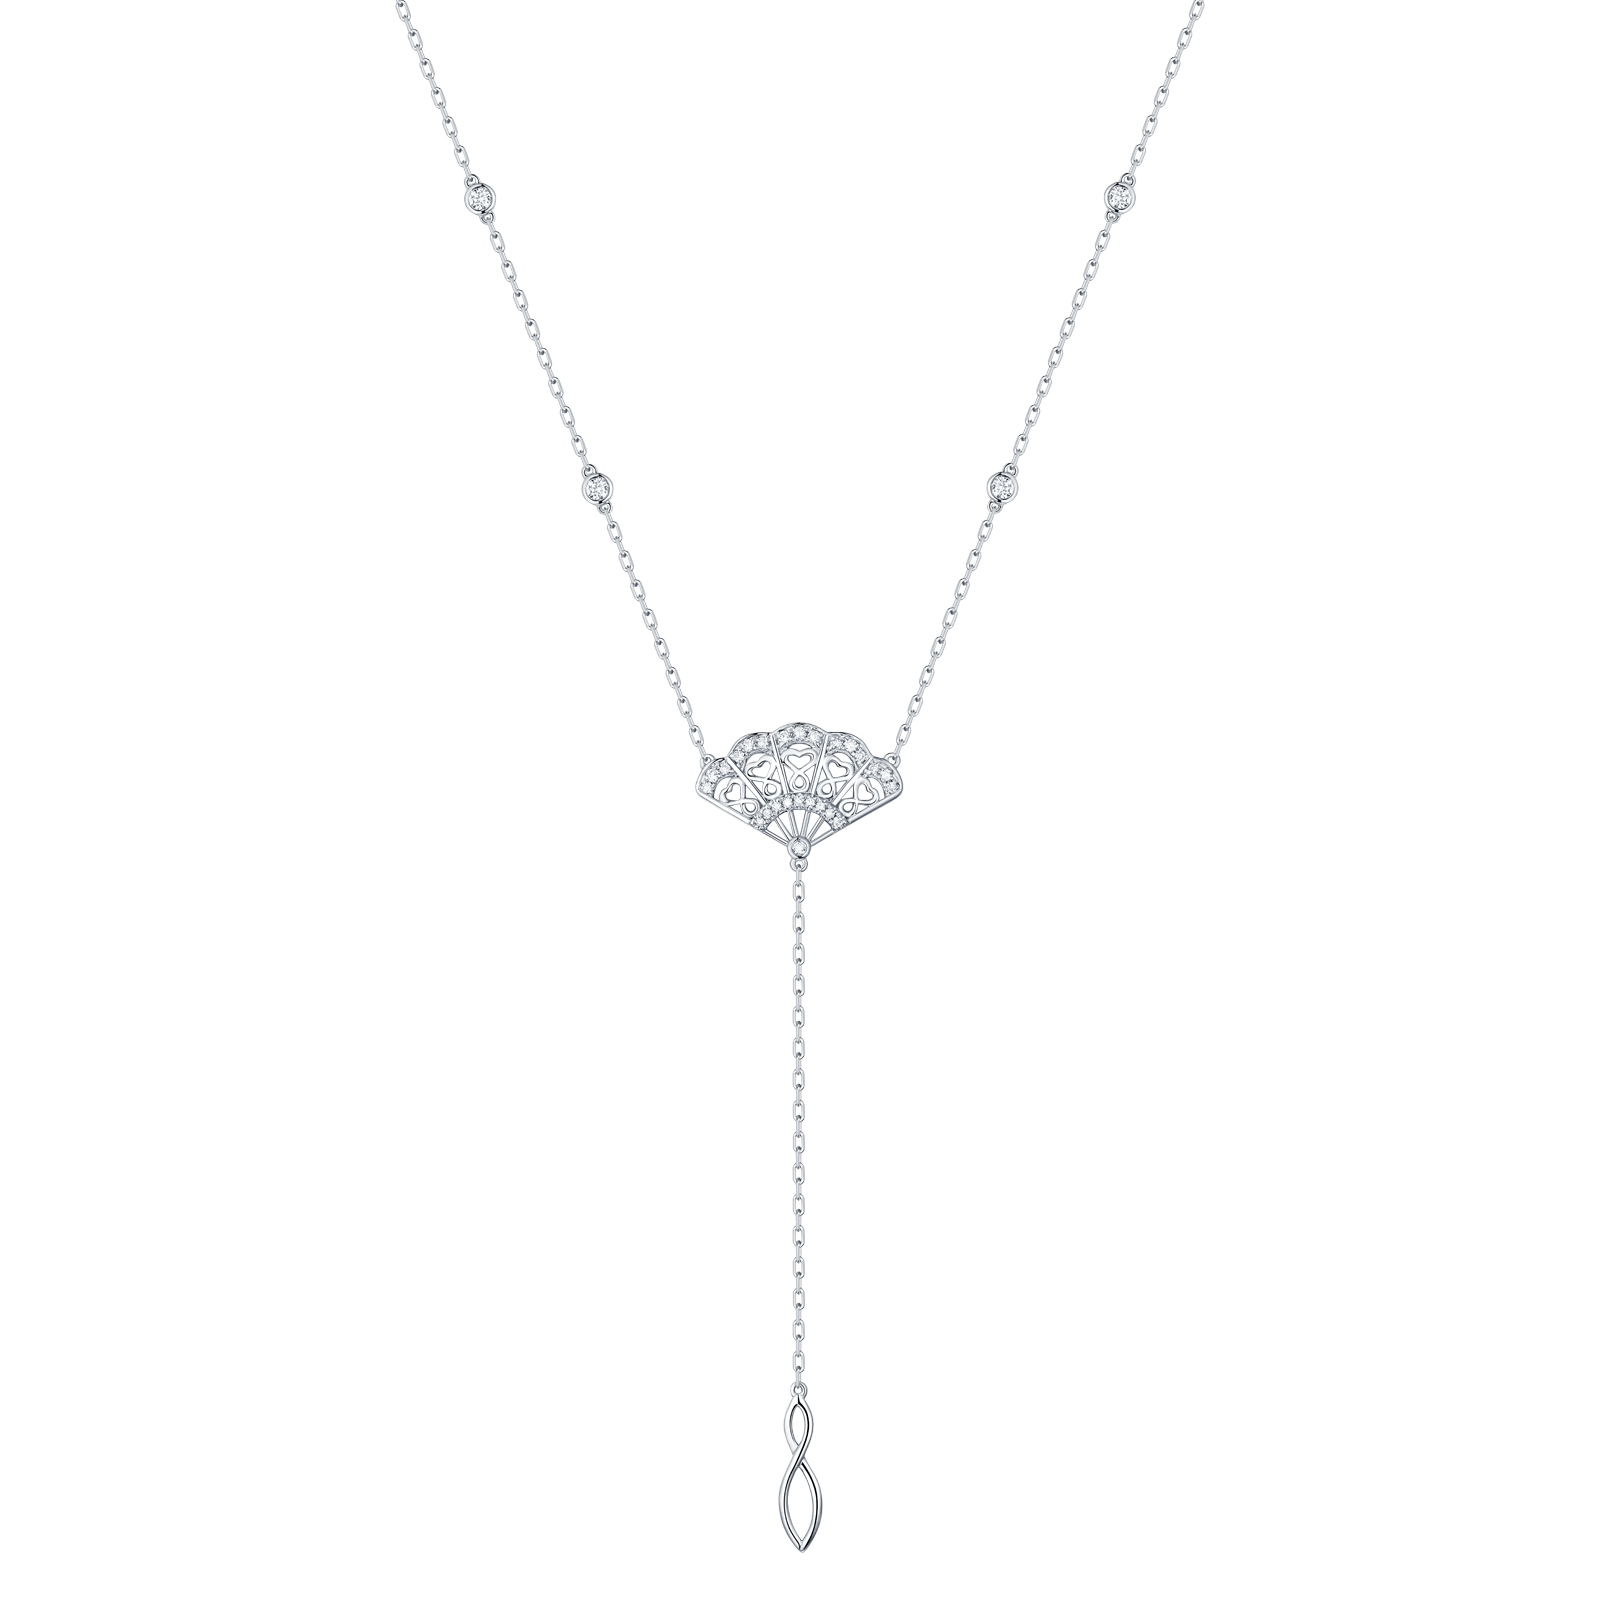 NL29927WHT- 14K White Gold Diamond Necklace, 0.23 TCW